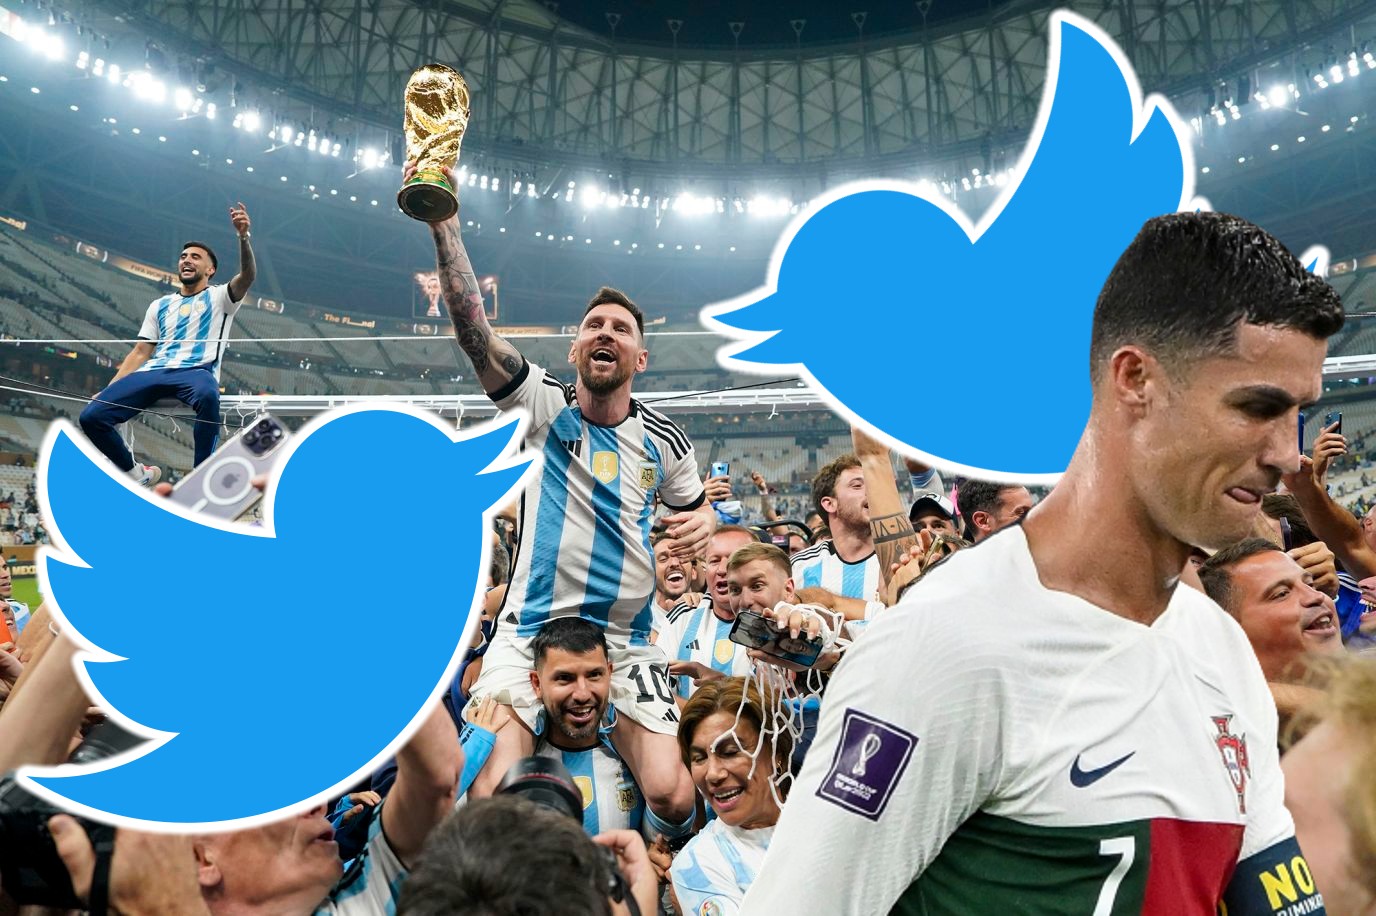 Twitter tarafından paylaşılan veriler ile 2022 Katar Dünya Kupası’nın ‘en’leri belli oldu. Dünya Kupası ile ilgili paylaşılan istatistikler, en çok konuşulan futbolcuları, takımları ve daha fazlasını ortaya koydu.
İşte Twitter’da 2022 Dünya Kupası’nın enleri: